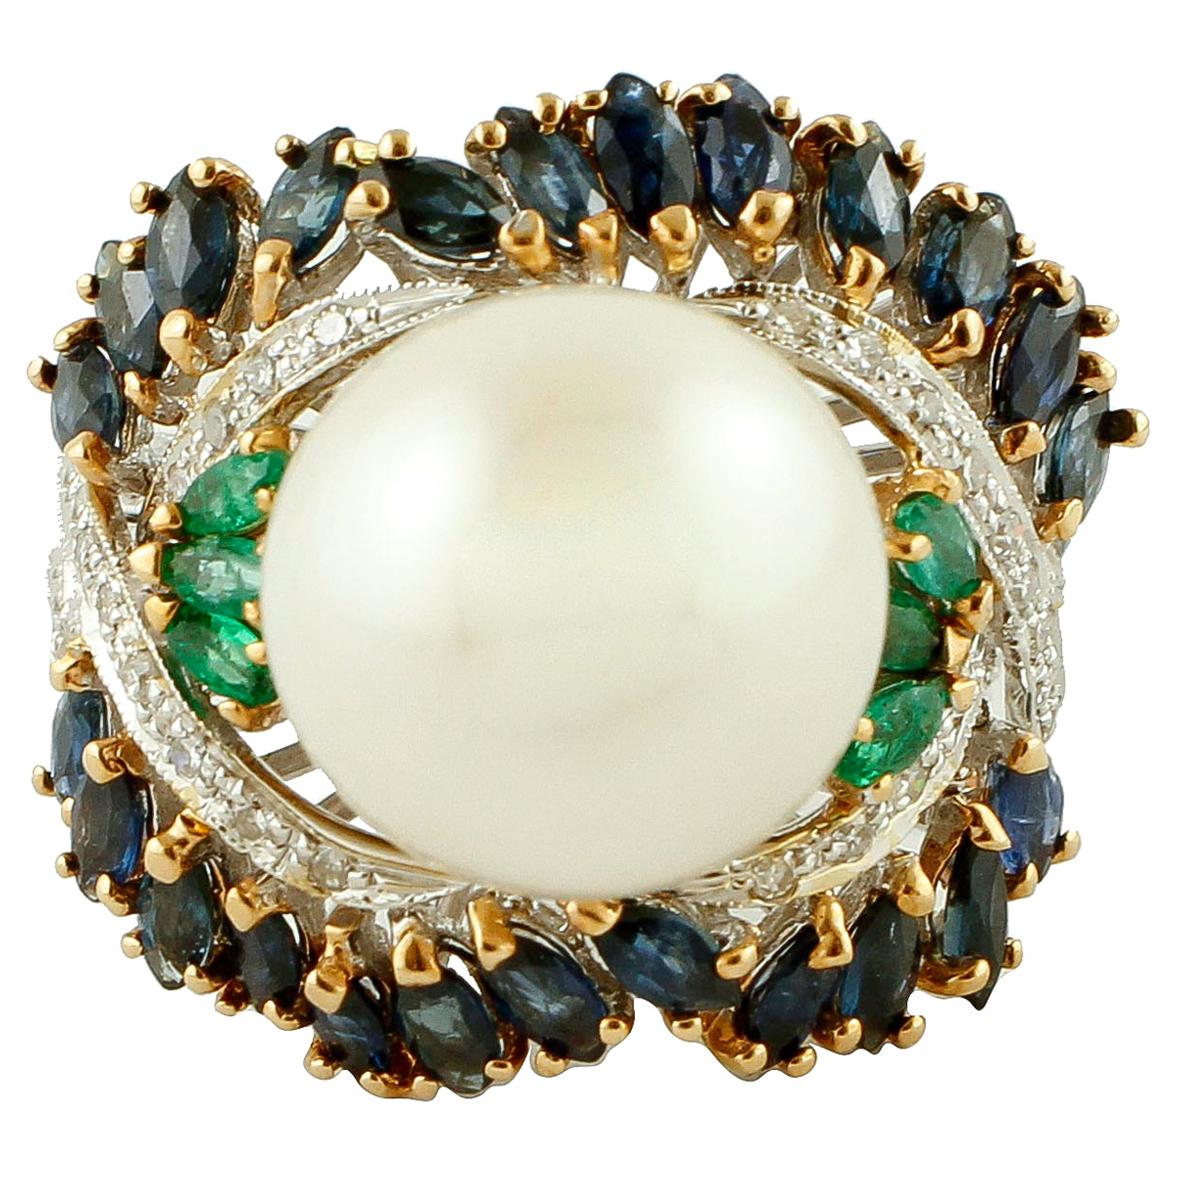 Diamanten, Smaragde, blaue Saphire, Perlen, 14k Weiß- und Roségold Cluster-Ring